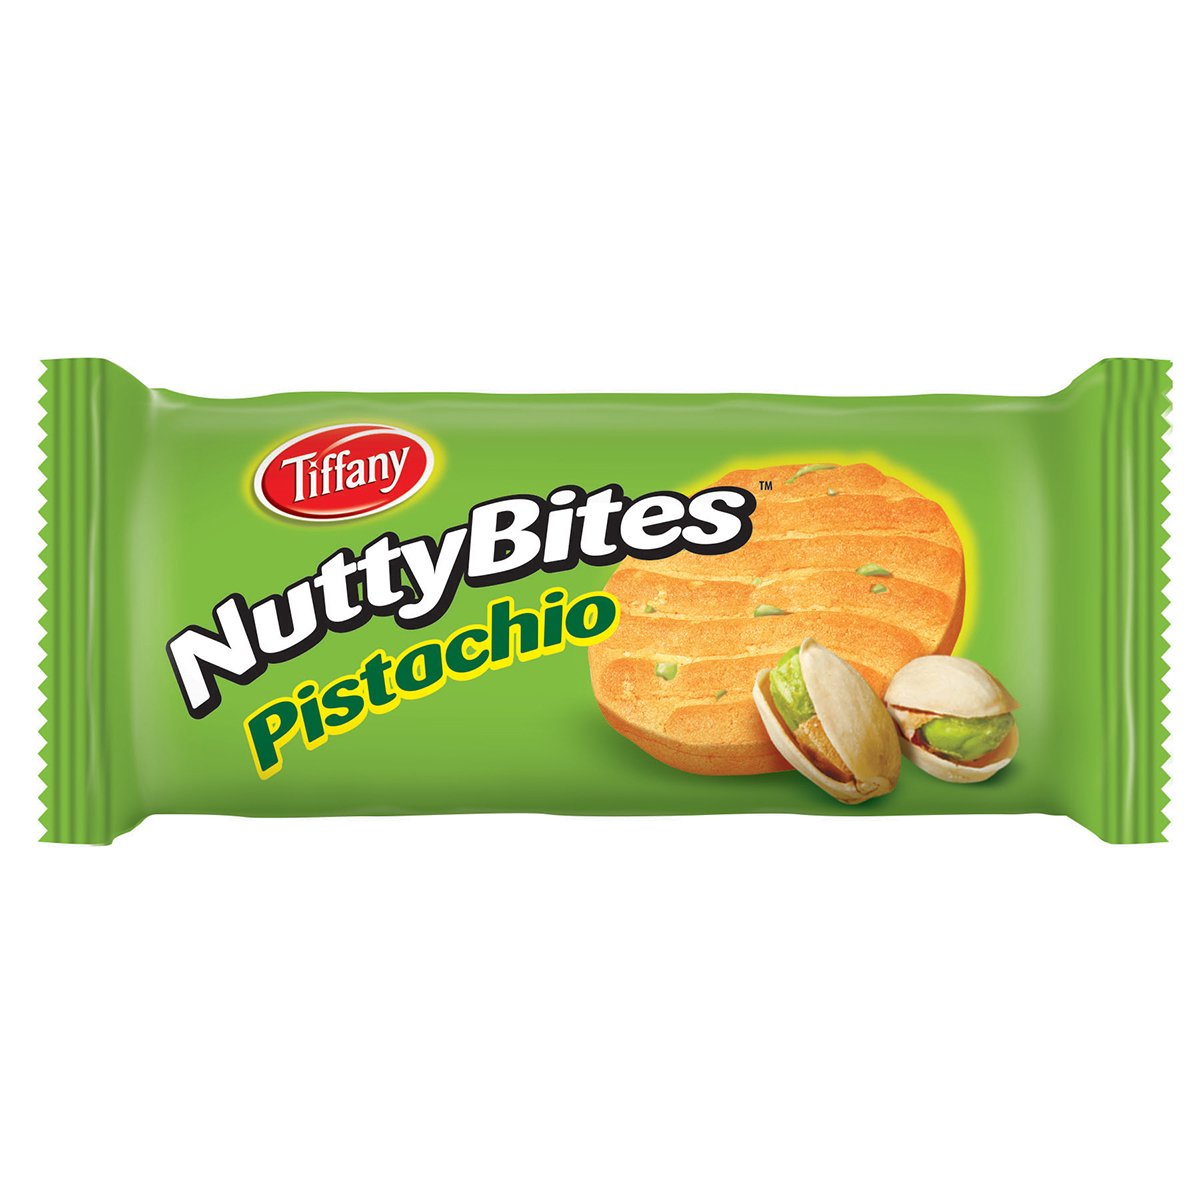 Tiffany Nutty Bites Pistachio 12 x 72 g